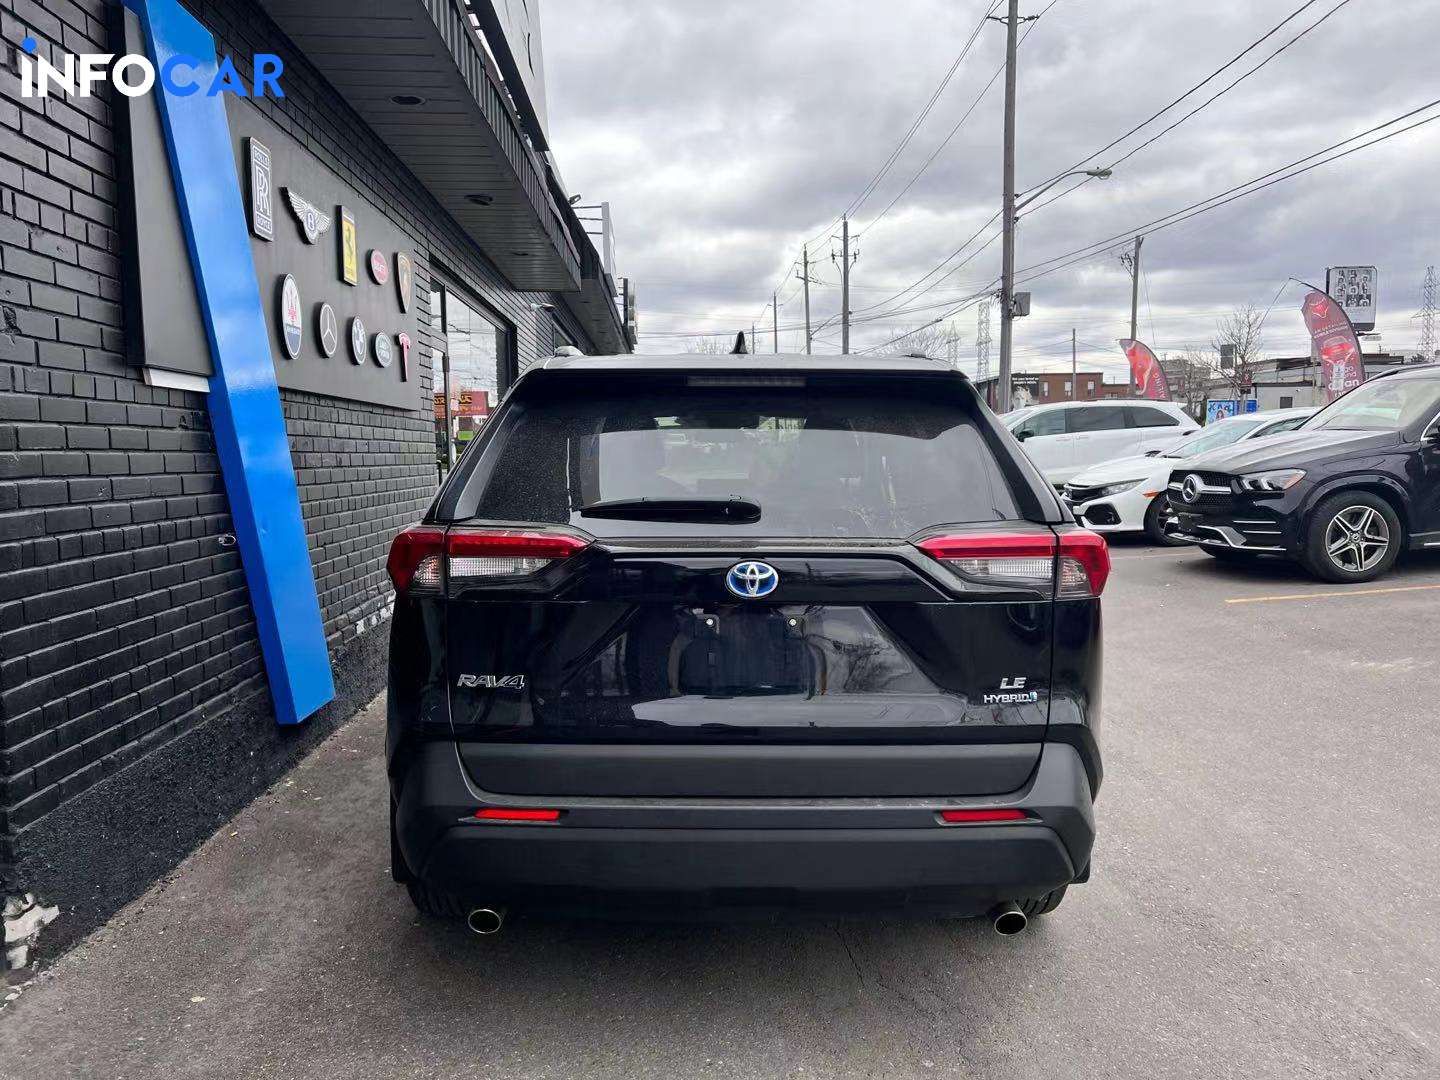 2019 Toyota RAV4 hybrid - INFOCAR - Toronto Auto Trading Platform